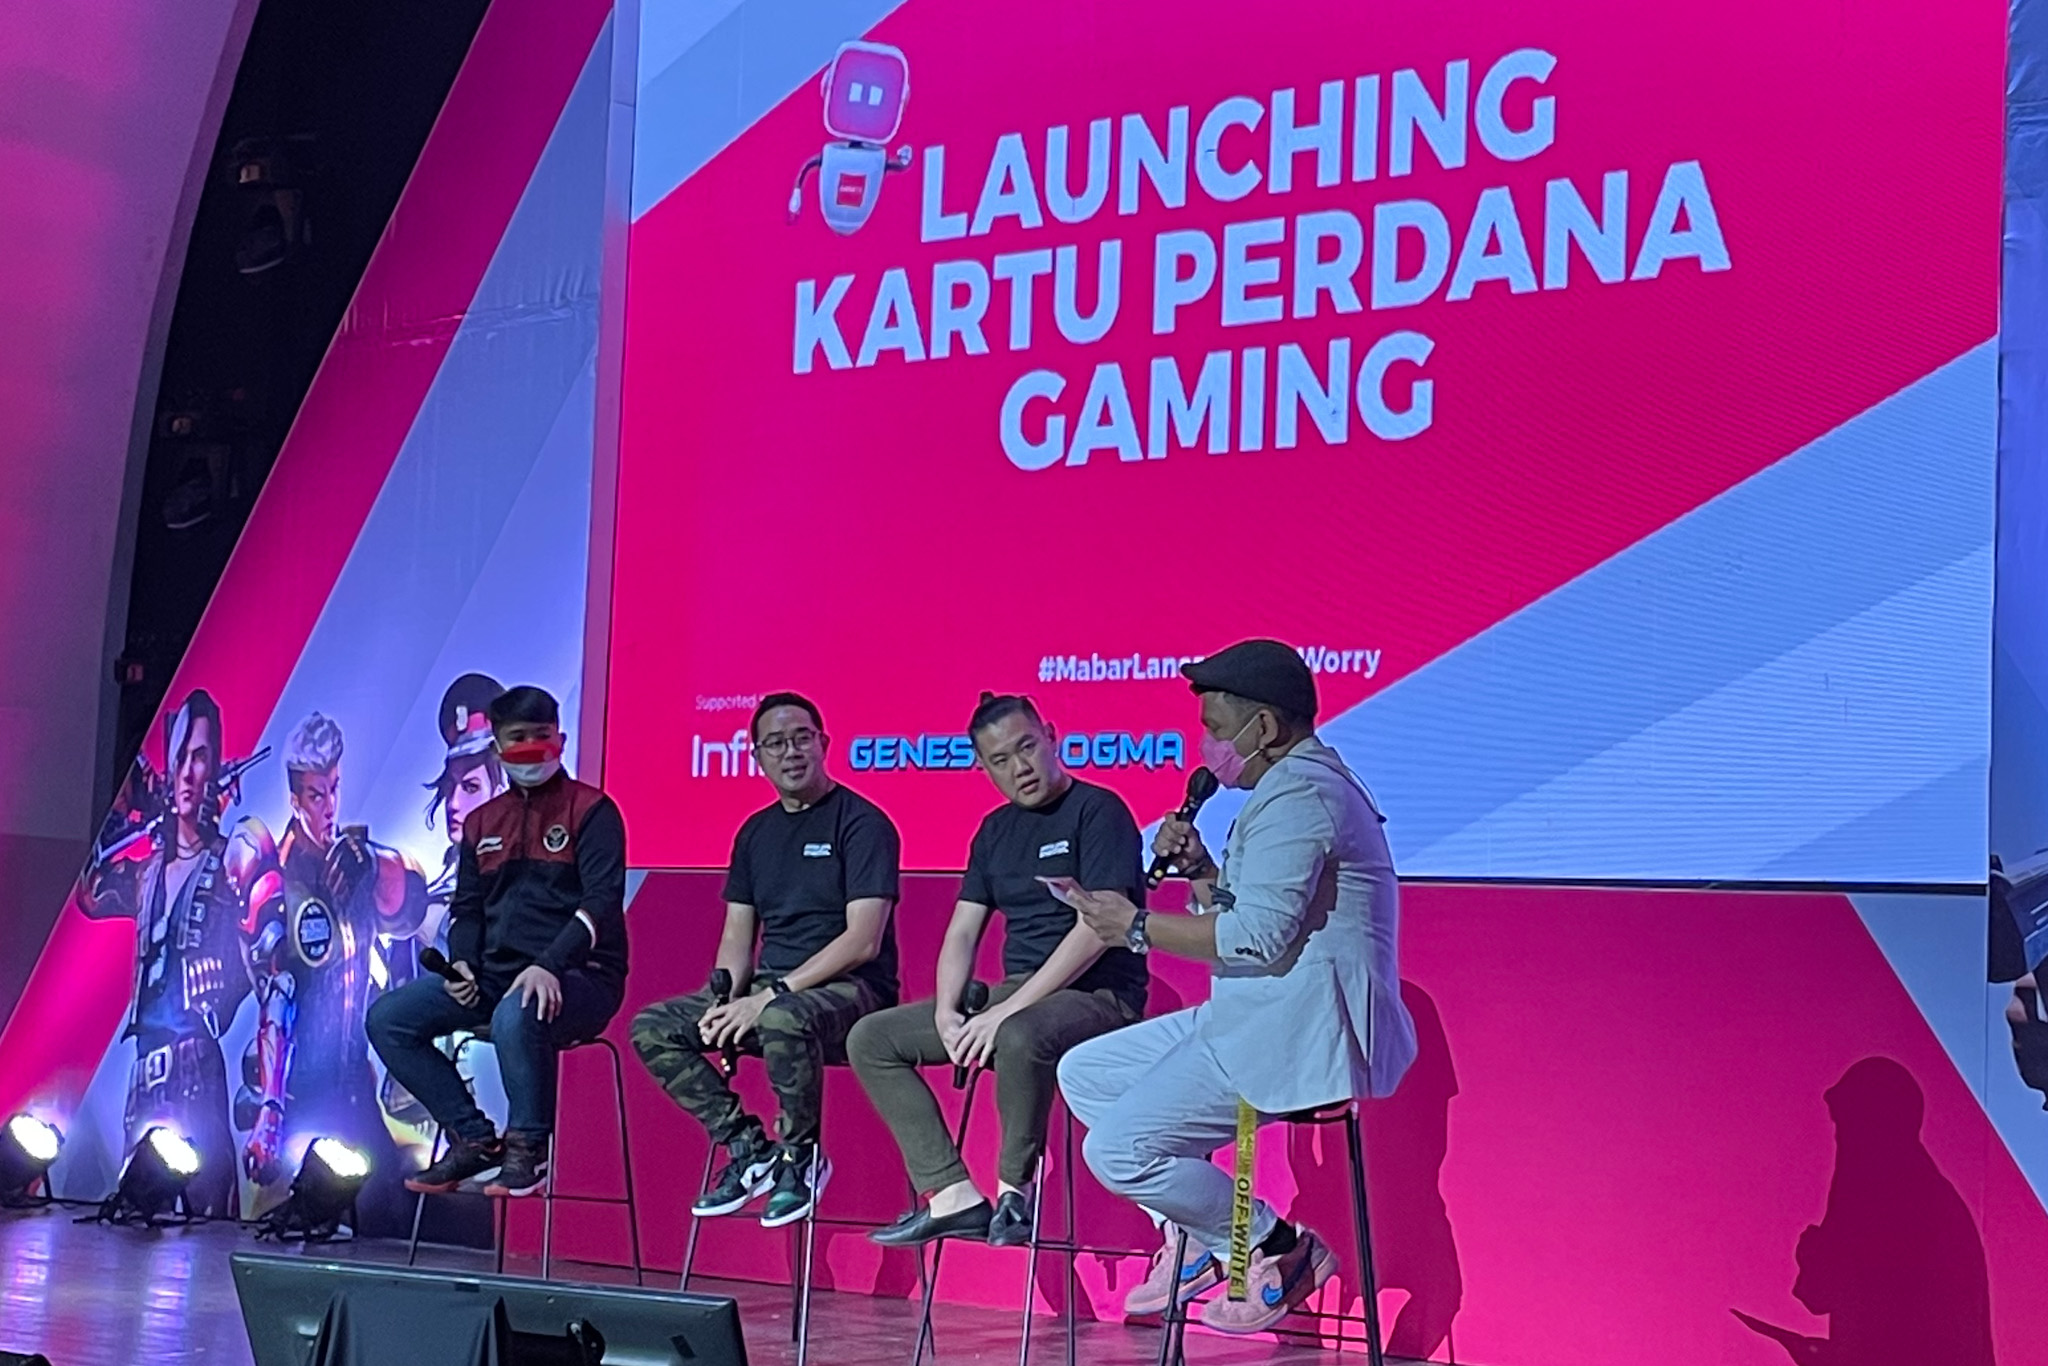 Dukung Esports Indonesia, Smartfren Luncurkan Kartu Perdana Gaming Bersama Genesis Dogma dan Infinix